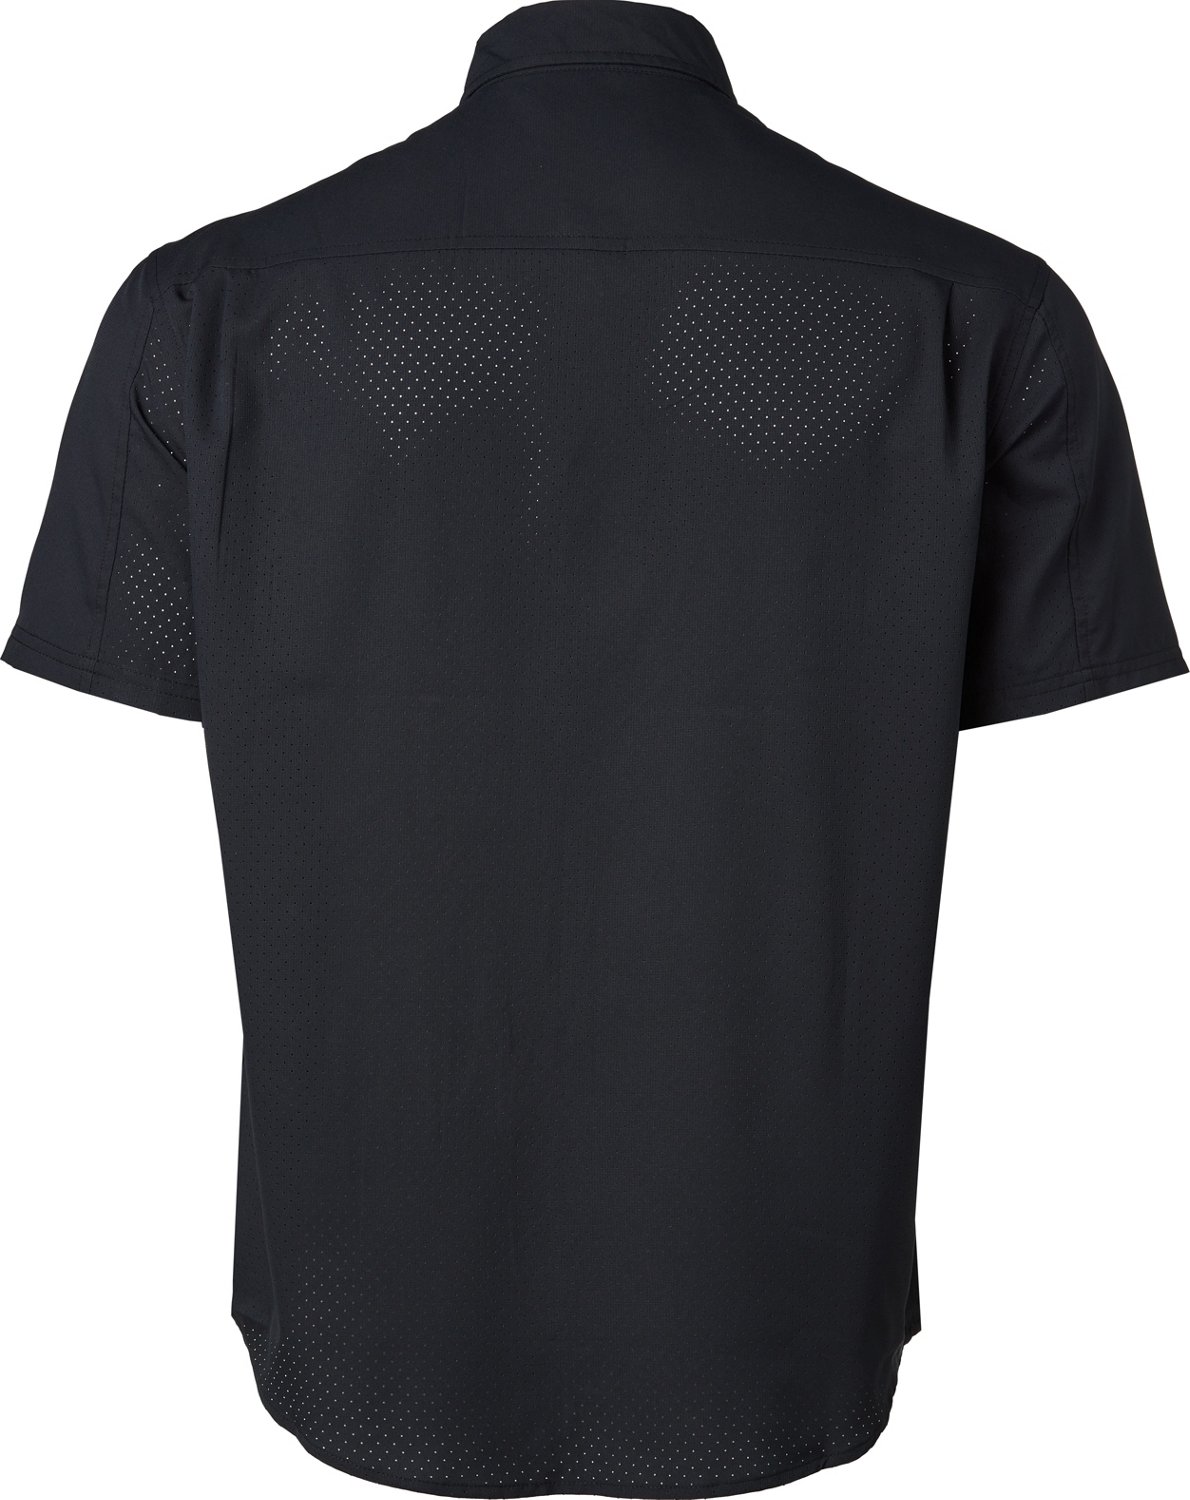 Huk Men's Tide Point Short Sleeve Shirt | Academy